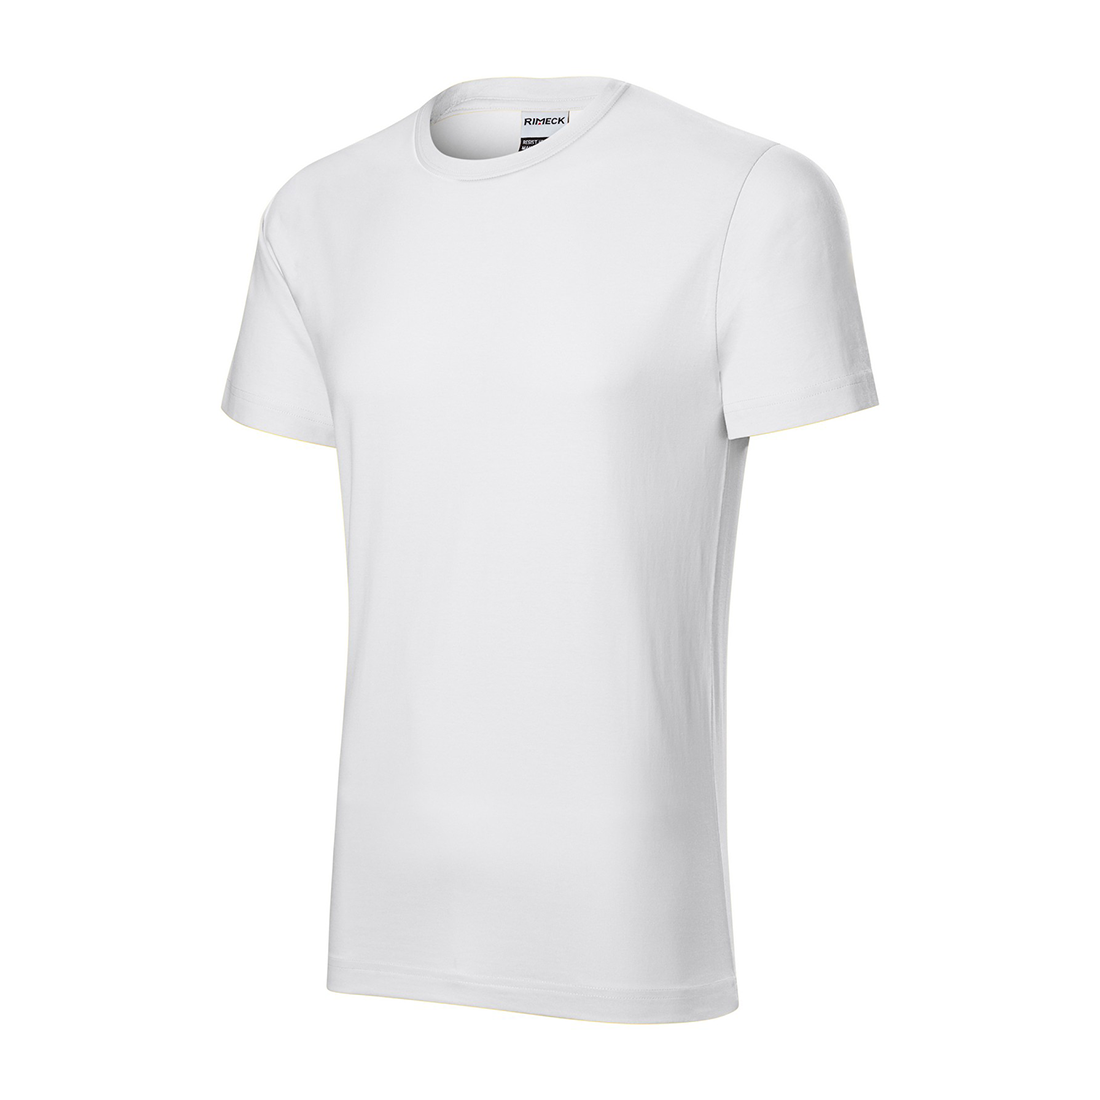 Camiseta de hombre de algodón prelavado - Ropa de protección